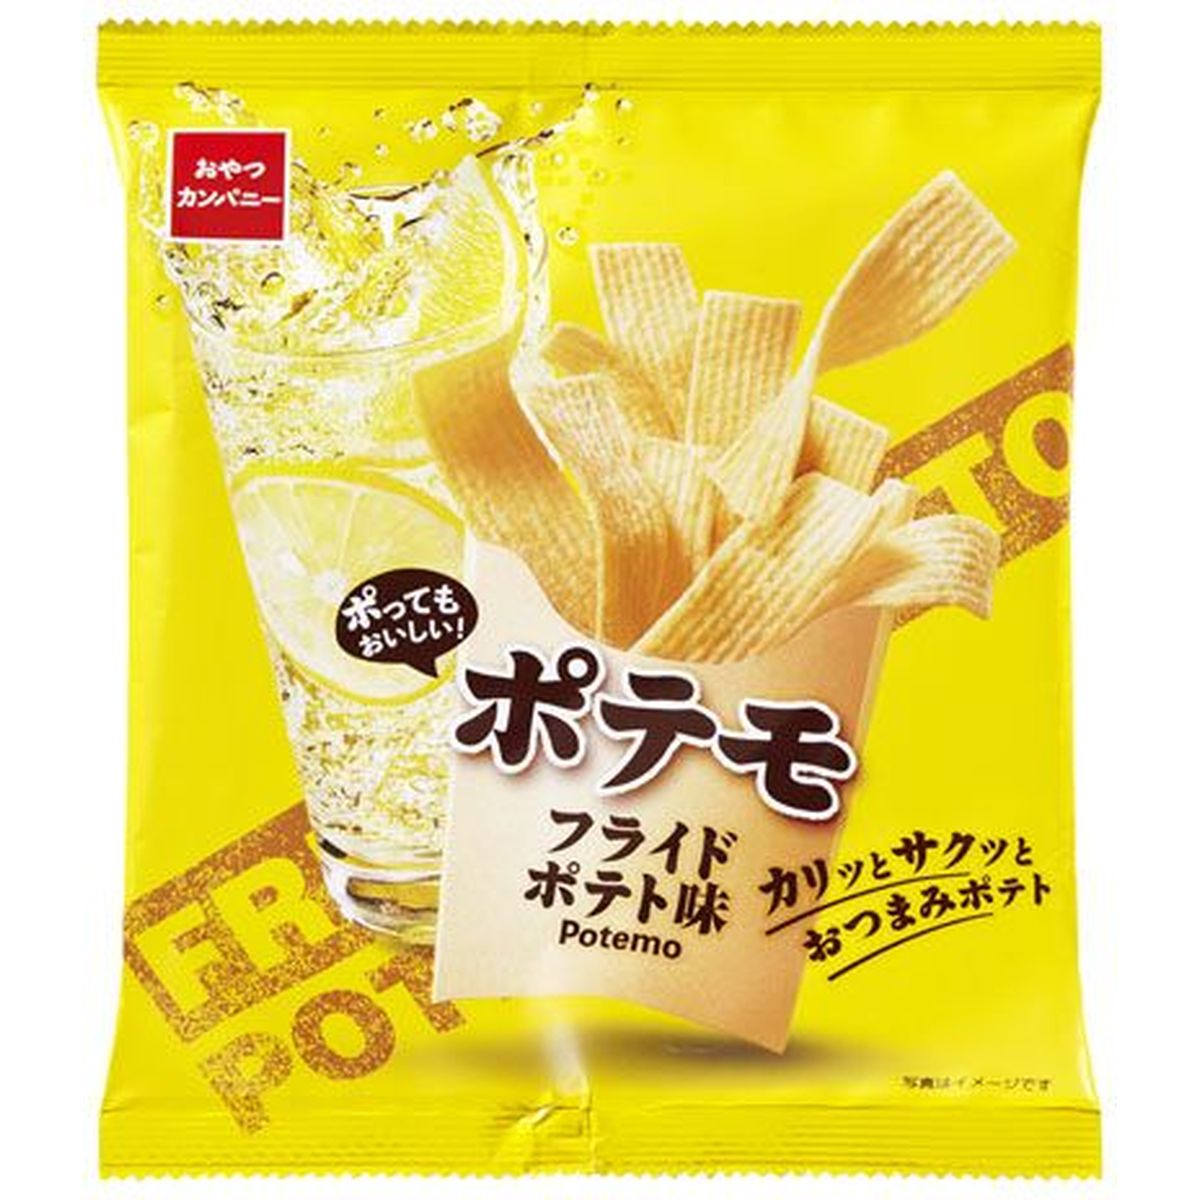 【12個入リ】オヤツカンパニー ポテモフライドポテト味 61g